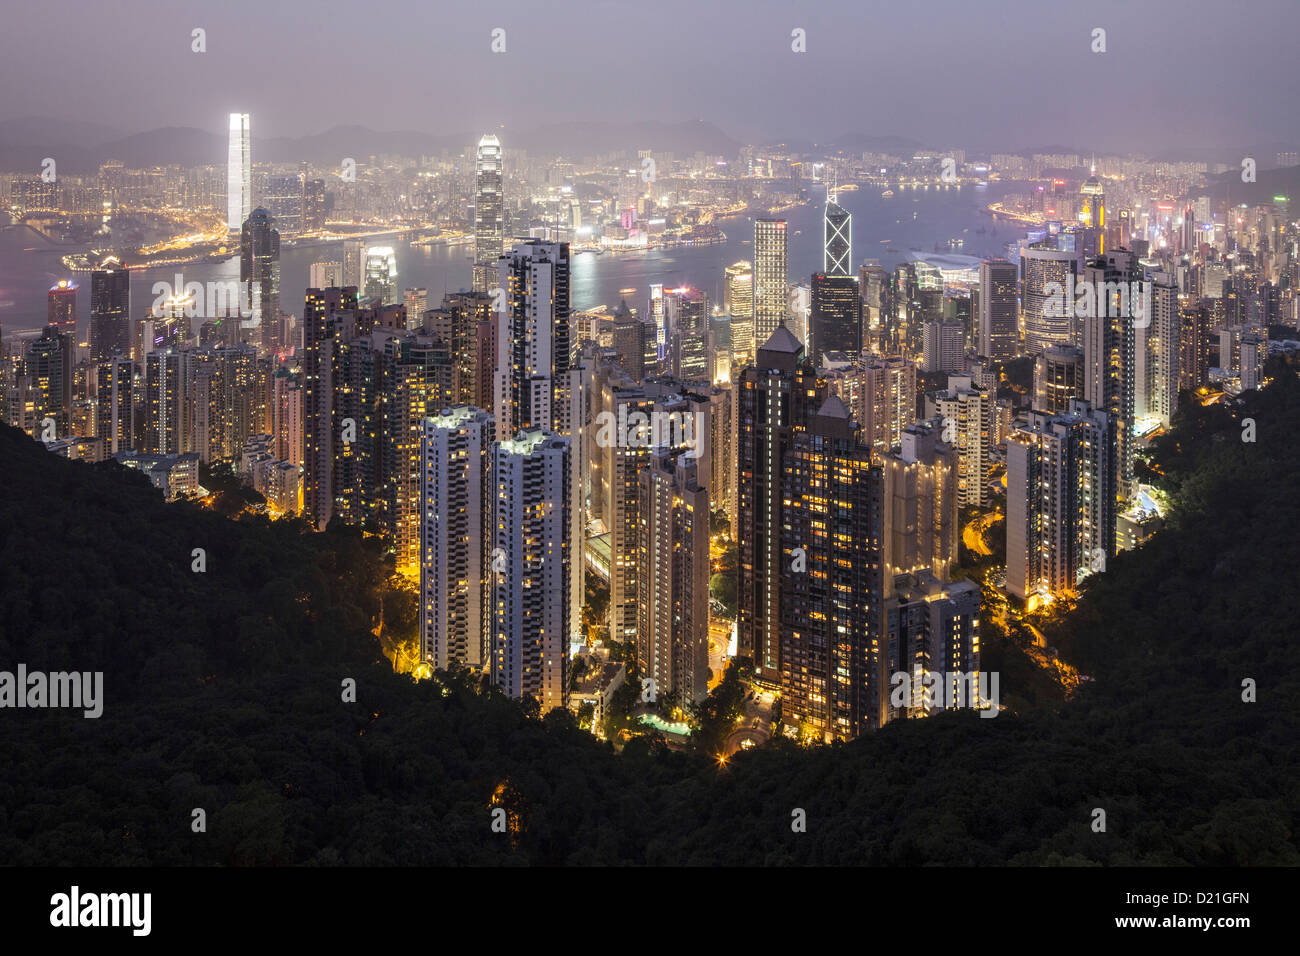 View from Victoria Peak onto the high rise buildings of Hong Kong Islandand Kowloon at night, Hongkong, China, Asia Stock Photo